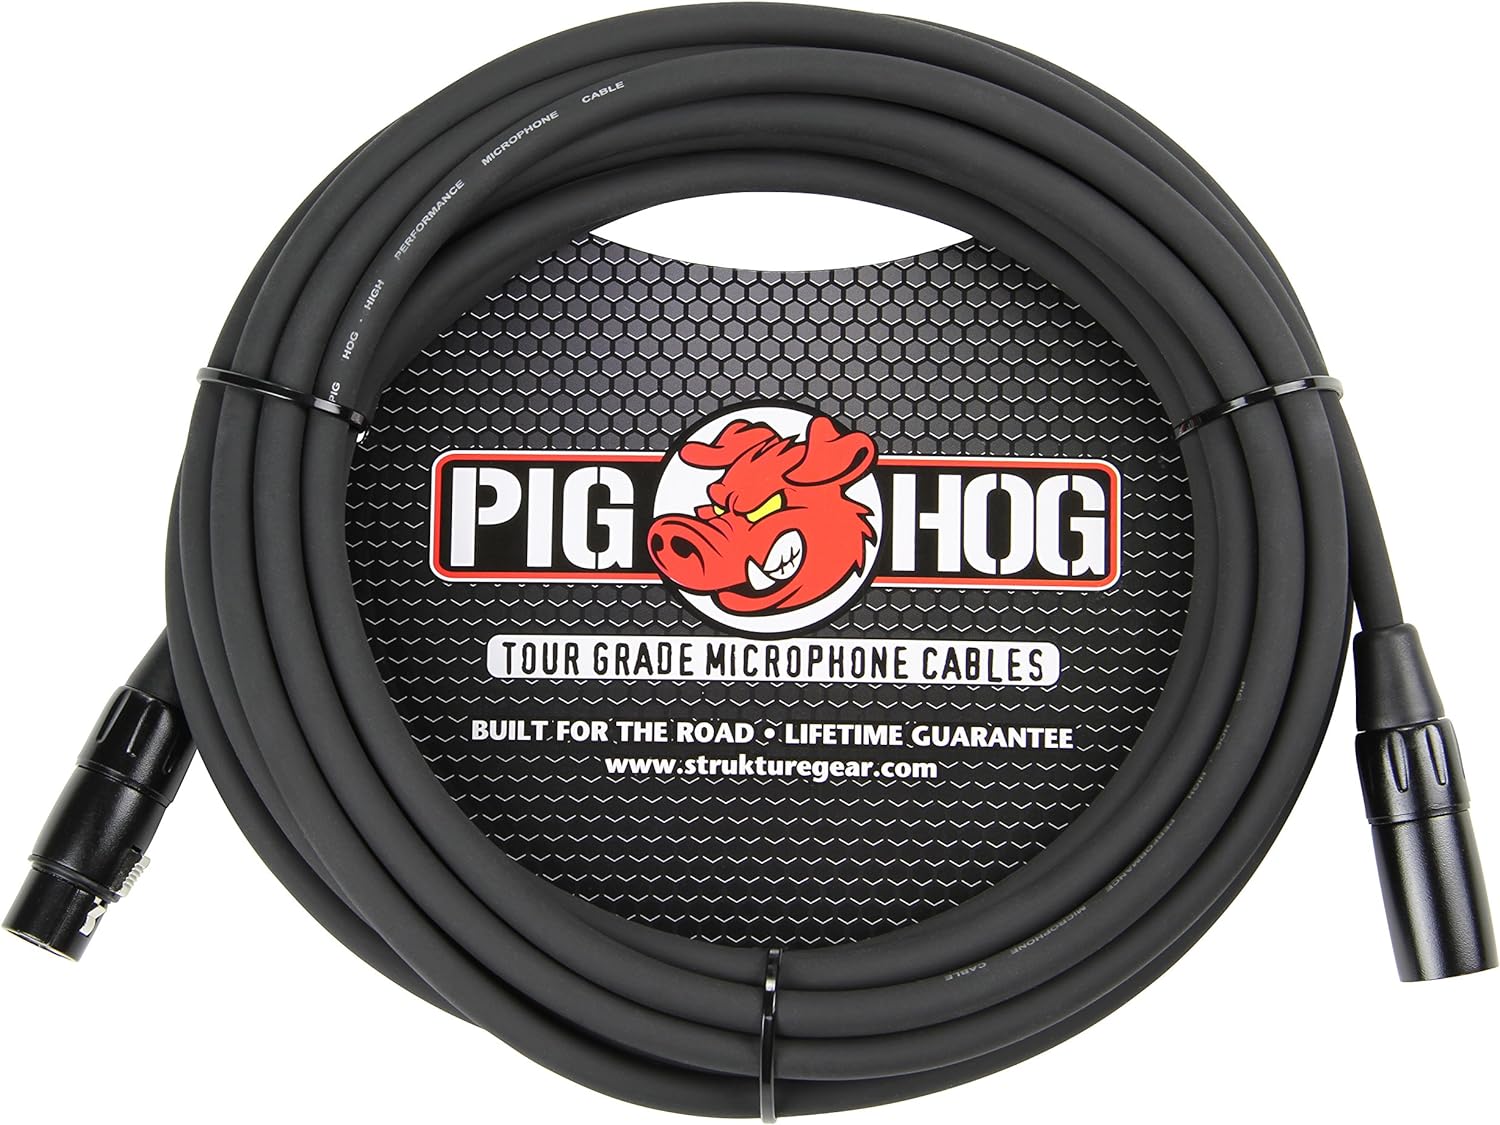 PIG-HOG PHM30 CABLE DE MICROFONO  XLR DE 0.315 IN DE ALTO RENDIMIENTO 30 PIES.